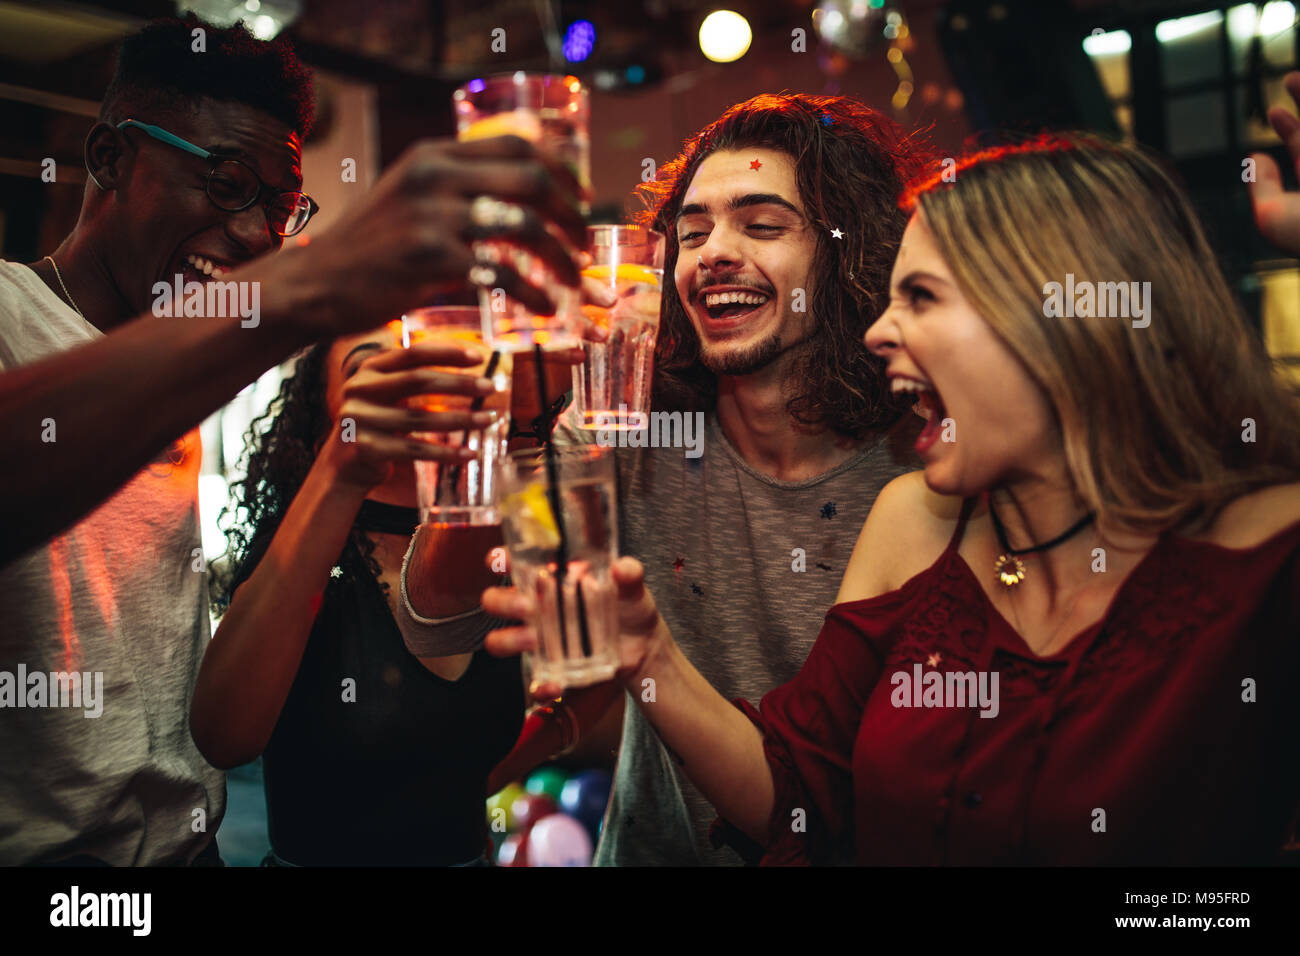 Les jeunes, hommes et femmes, de célébrer une fête, boire et danser. Groupe d'ami toasting drinks et de s'amuser à la discothèque. Banque D'Images